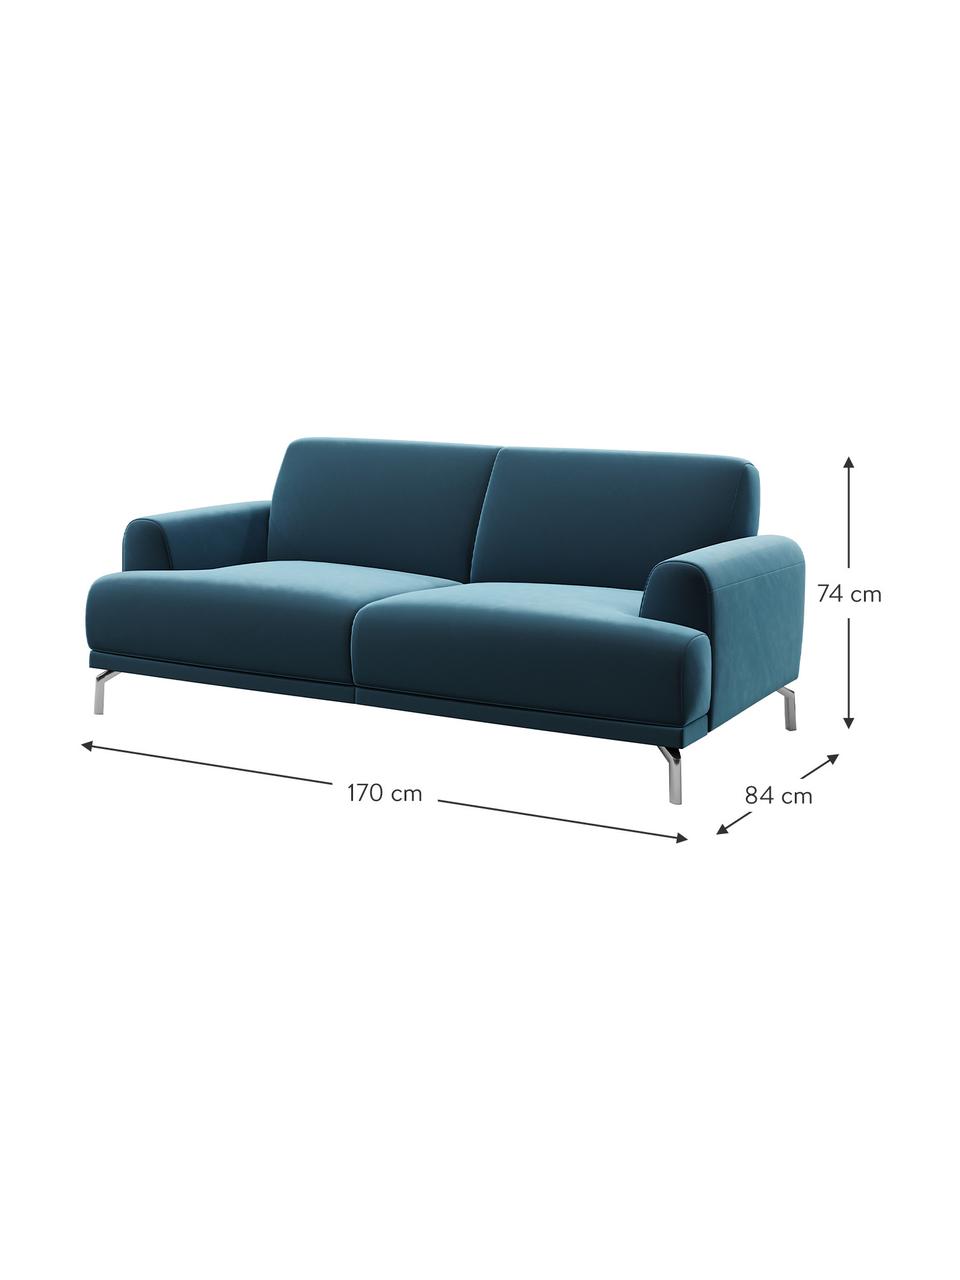 Sofa z aksamitu Puzo (2-osobowa), Tapicerka: 100% aksamit poliestrowy,, Nogi: metal lakierowany, Ciemny niebieski, S 170 x G 84 cm